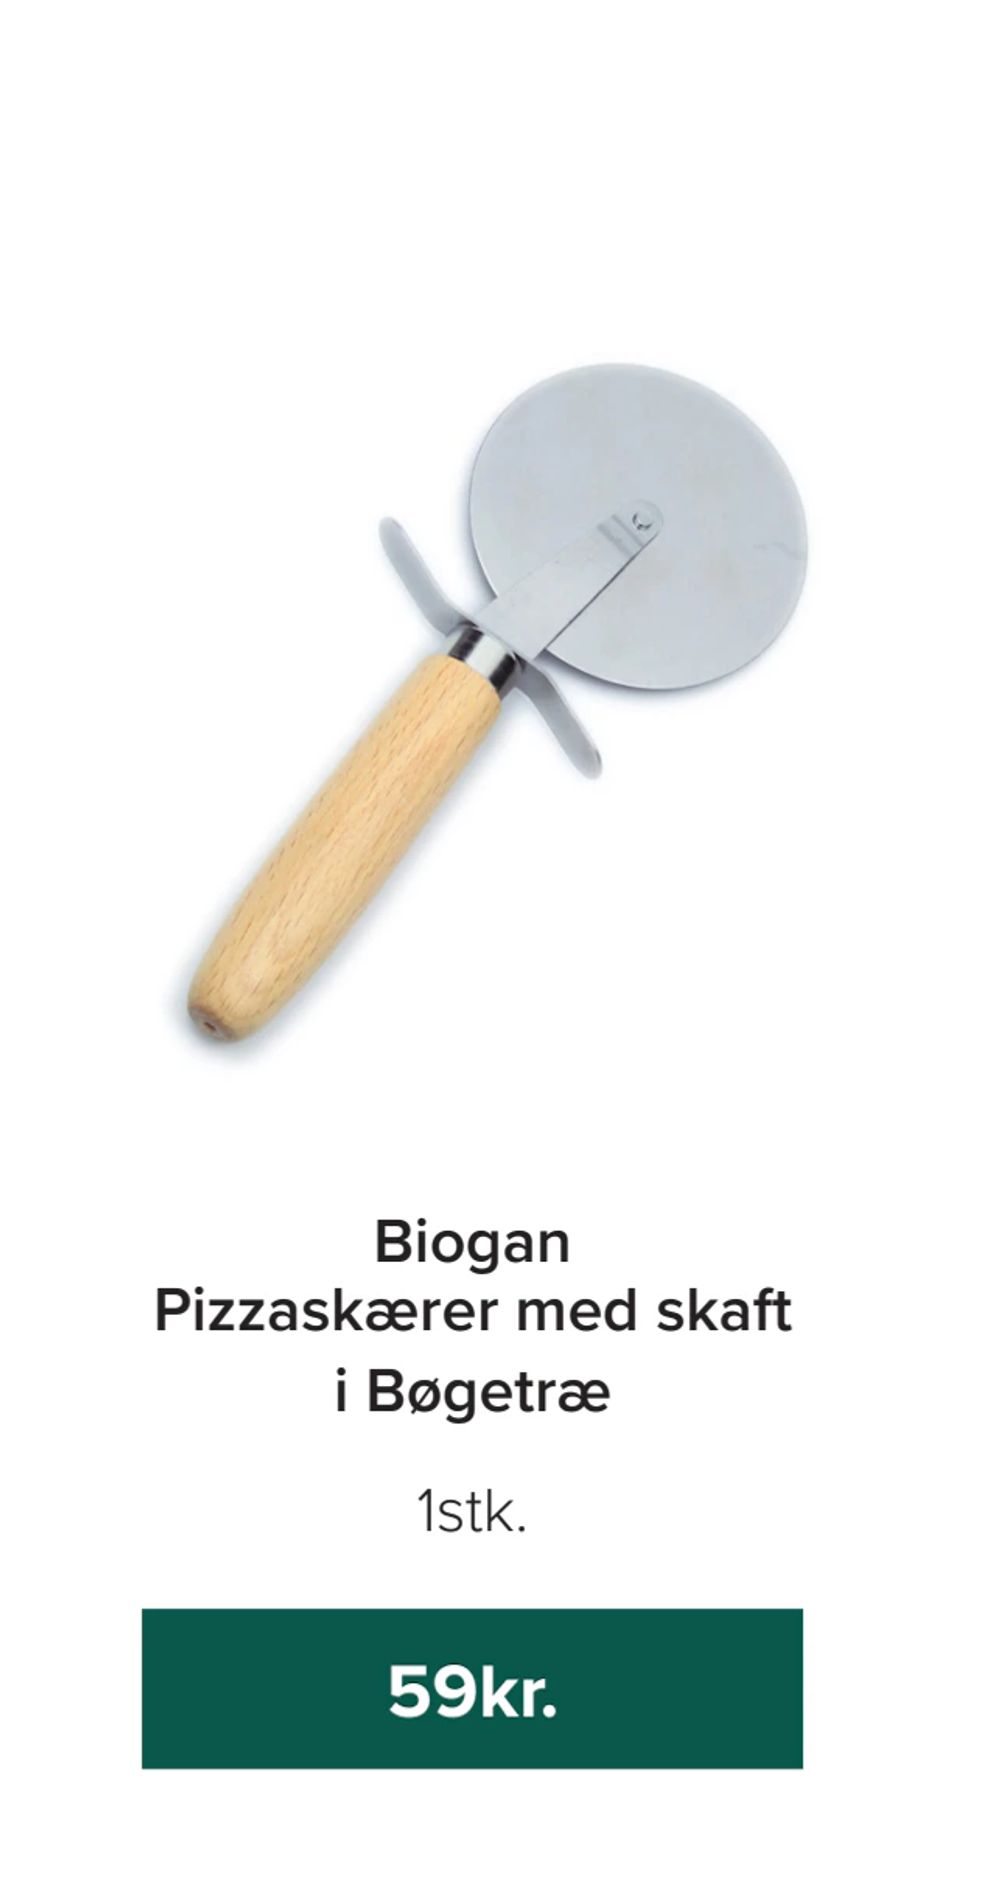 Tilbud på Biogan Pizzaskærer med skaft i Bøgetræ fra Helsemin til 59 kr.